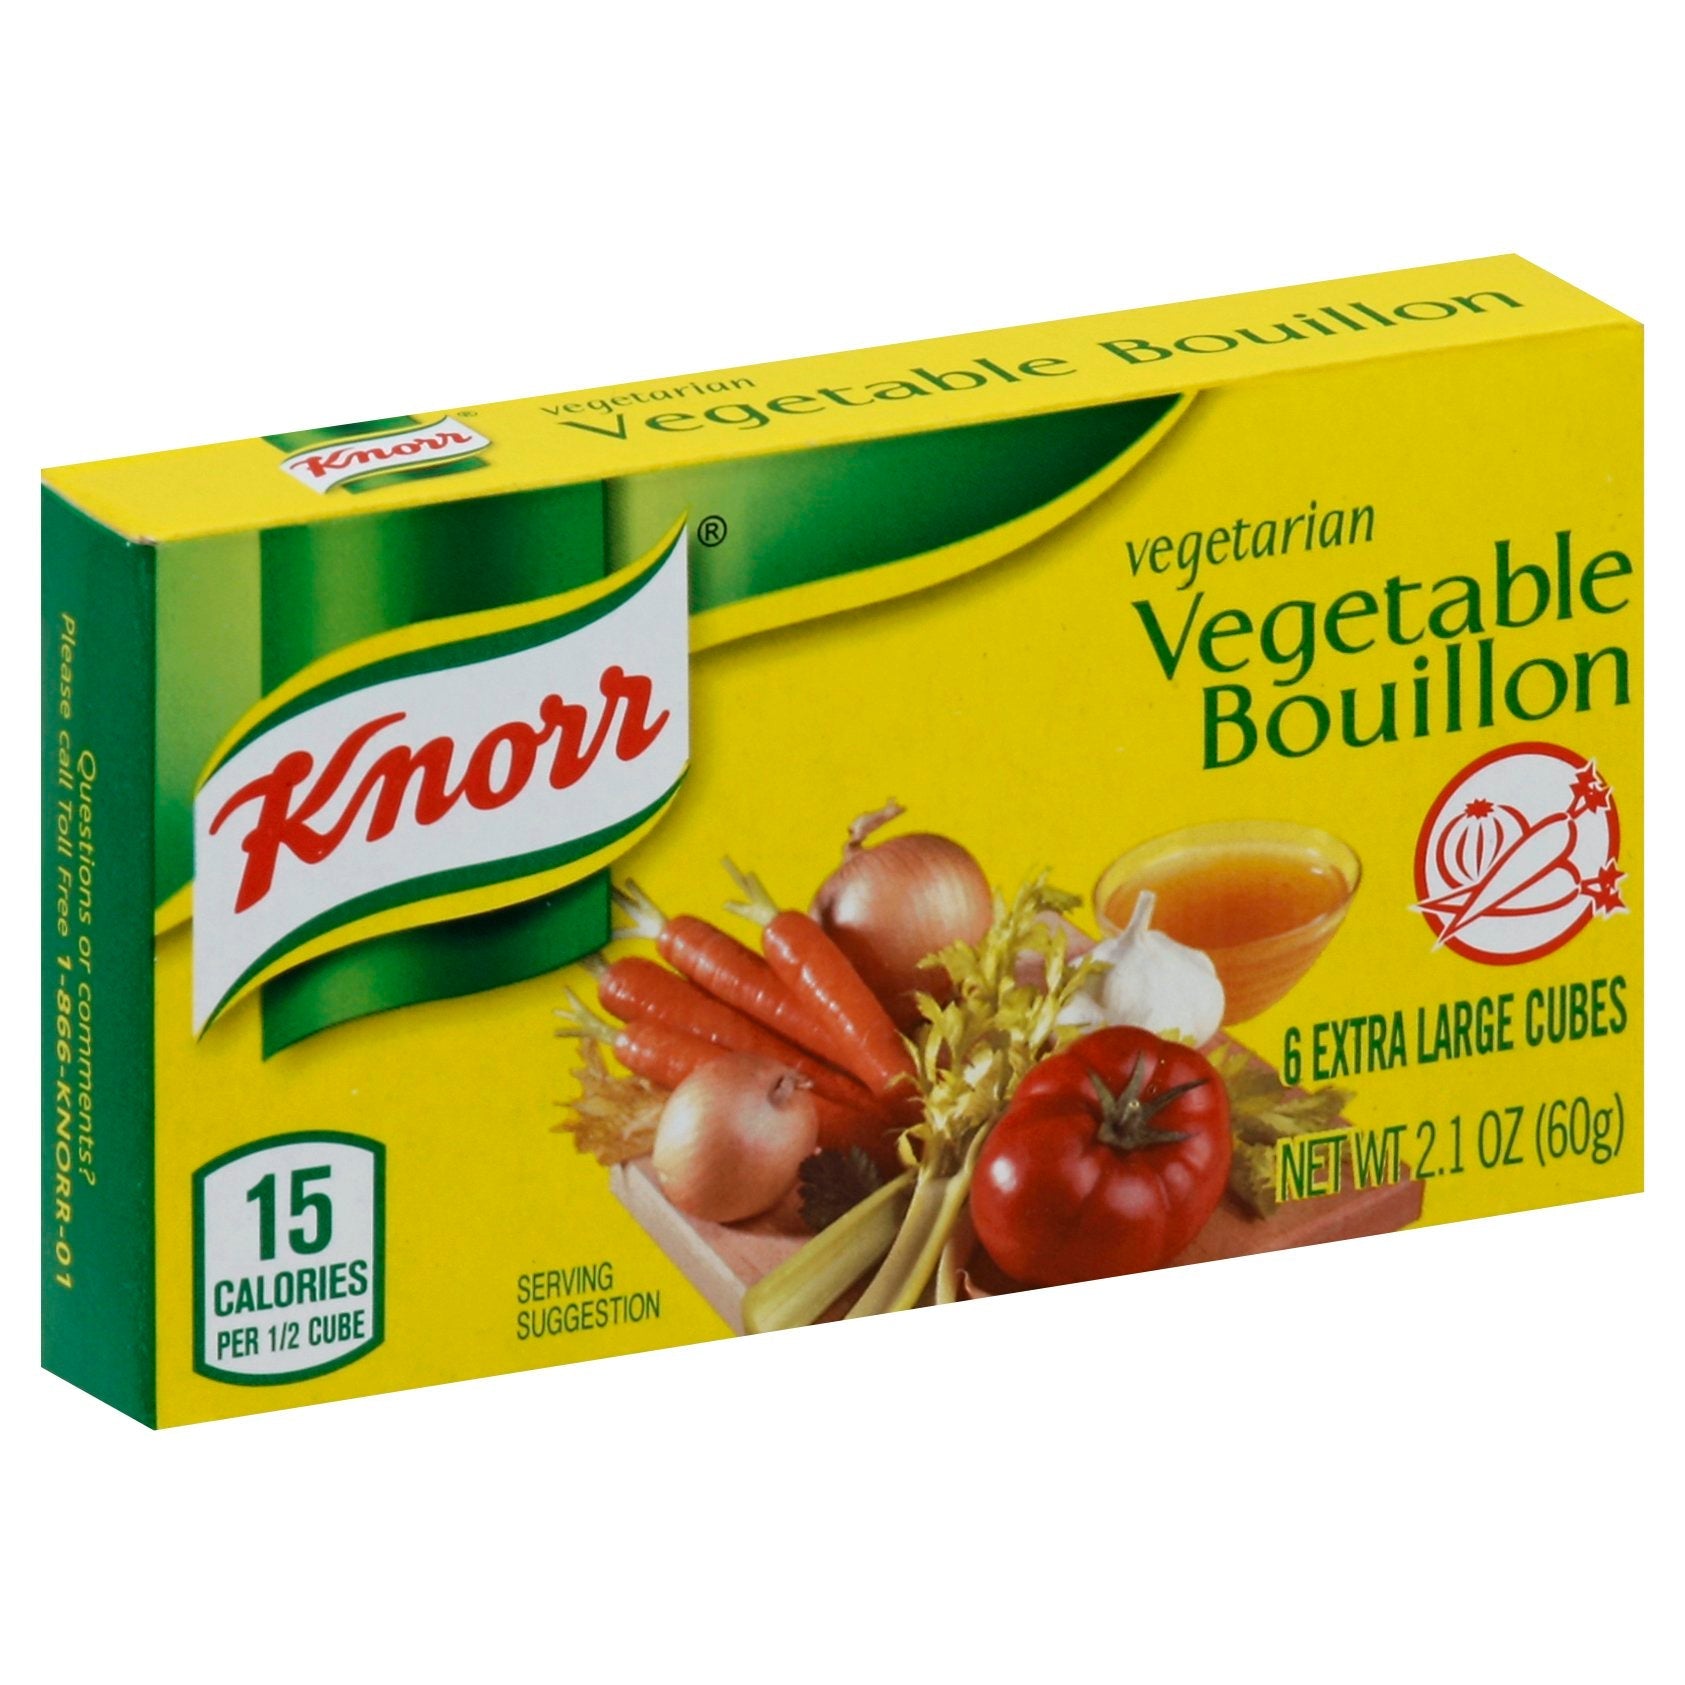 Knorr - Knorr, Recipe Mix, Vegetable (1.4 oz), Shop